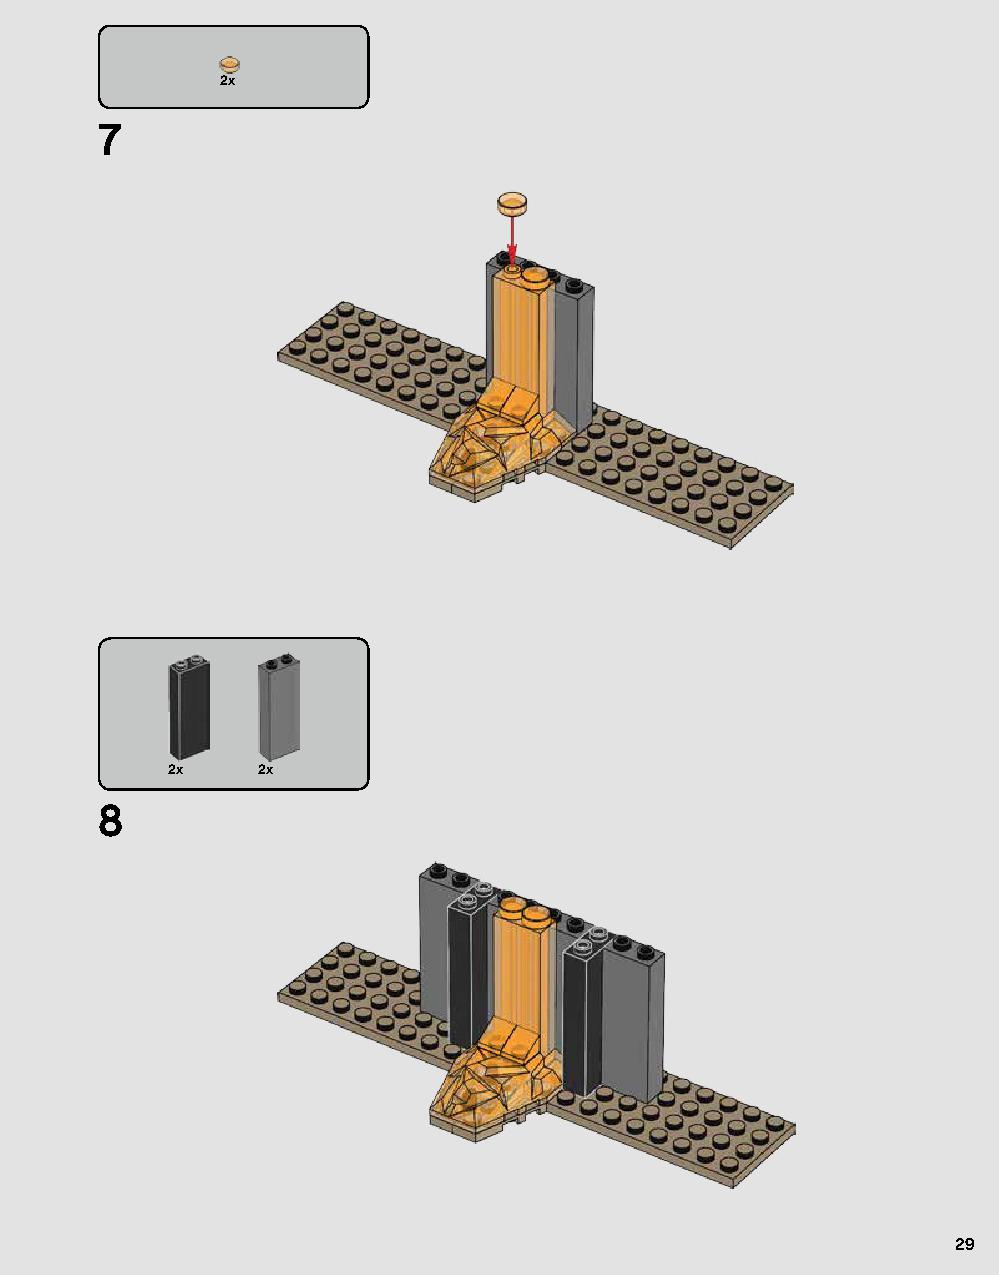 ダース・ベイダーの城 75251 レゴの商品情報 レゴの説明書・組立方法 29 page